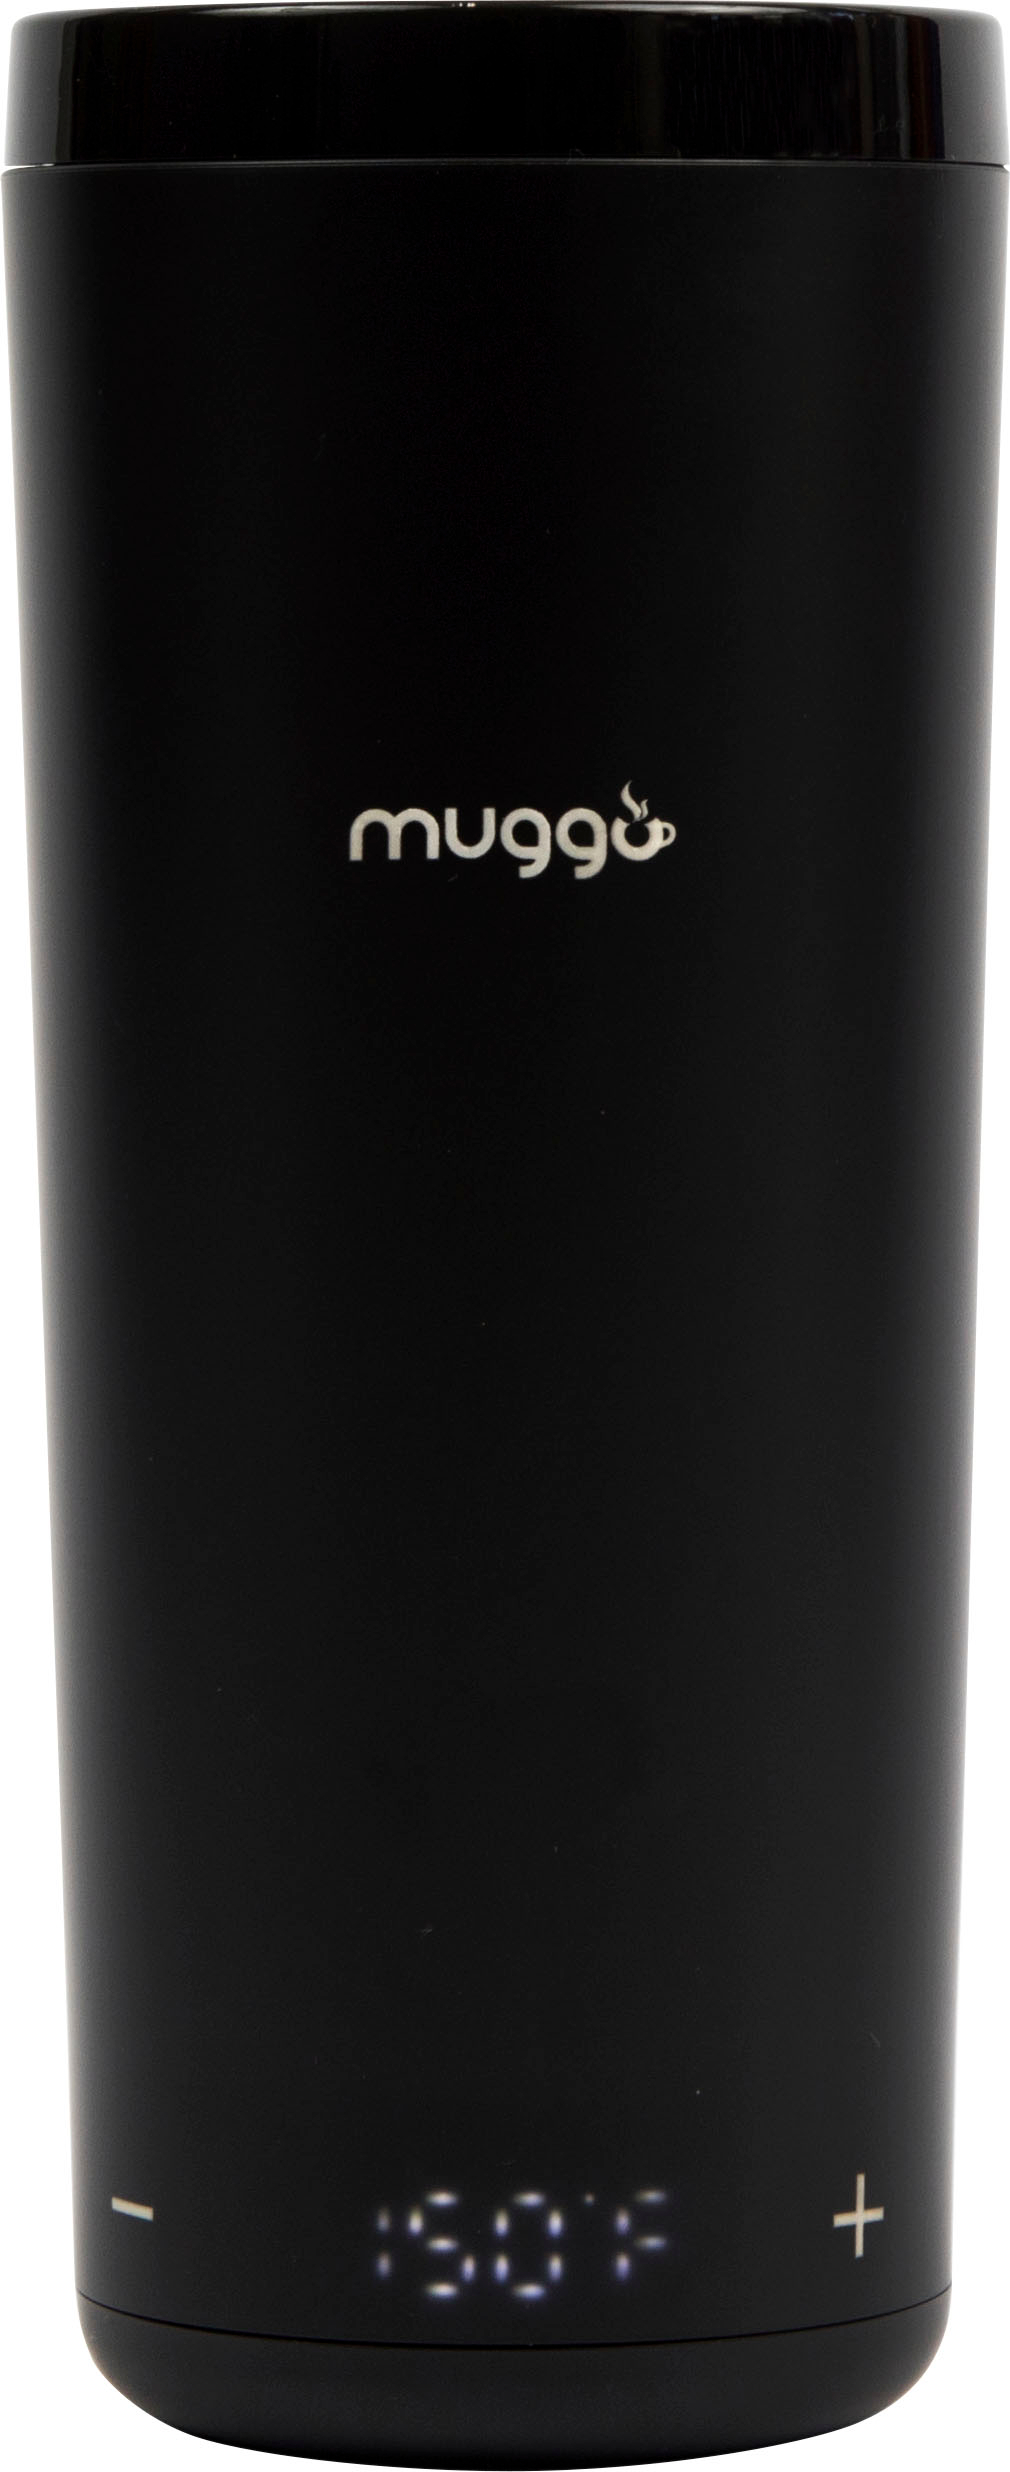 Muggo Mug - Smart Cup With Temperature Control Drink 10 Oz